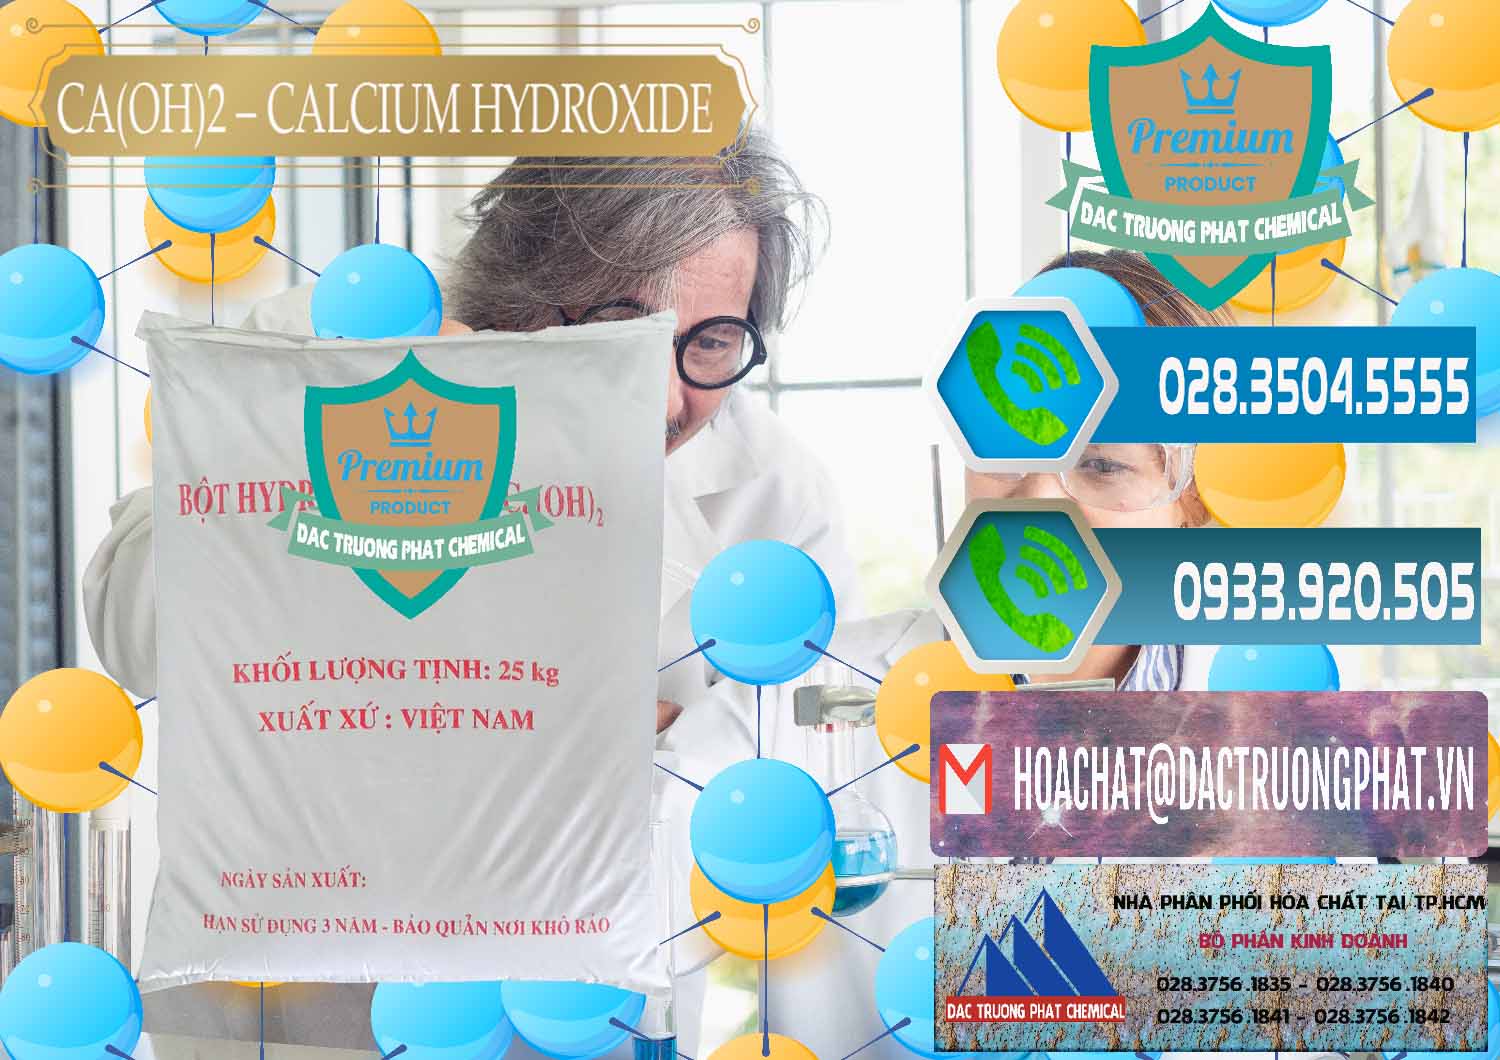 Đơn vị chuyên bán ( phân phối ) Ca(OH)2 - Calcium Hydroxide Việt Nam - 0186 - Nơi chuyên kinh doanh & phân phối hóa chất tại TP.HCM - congtyhoachat.net